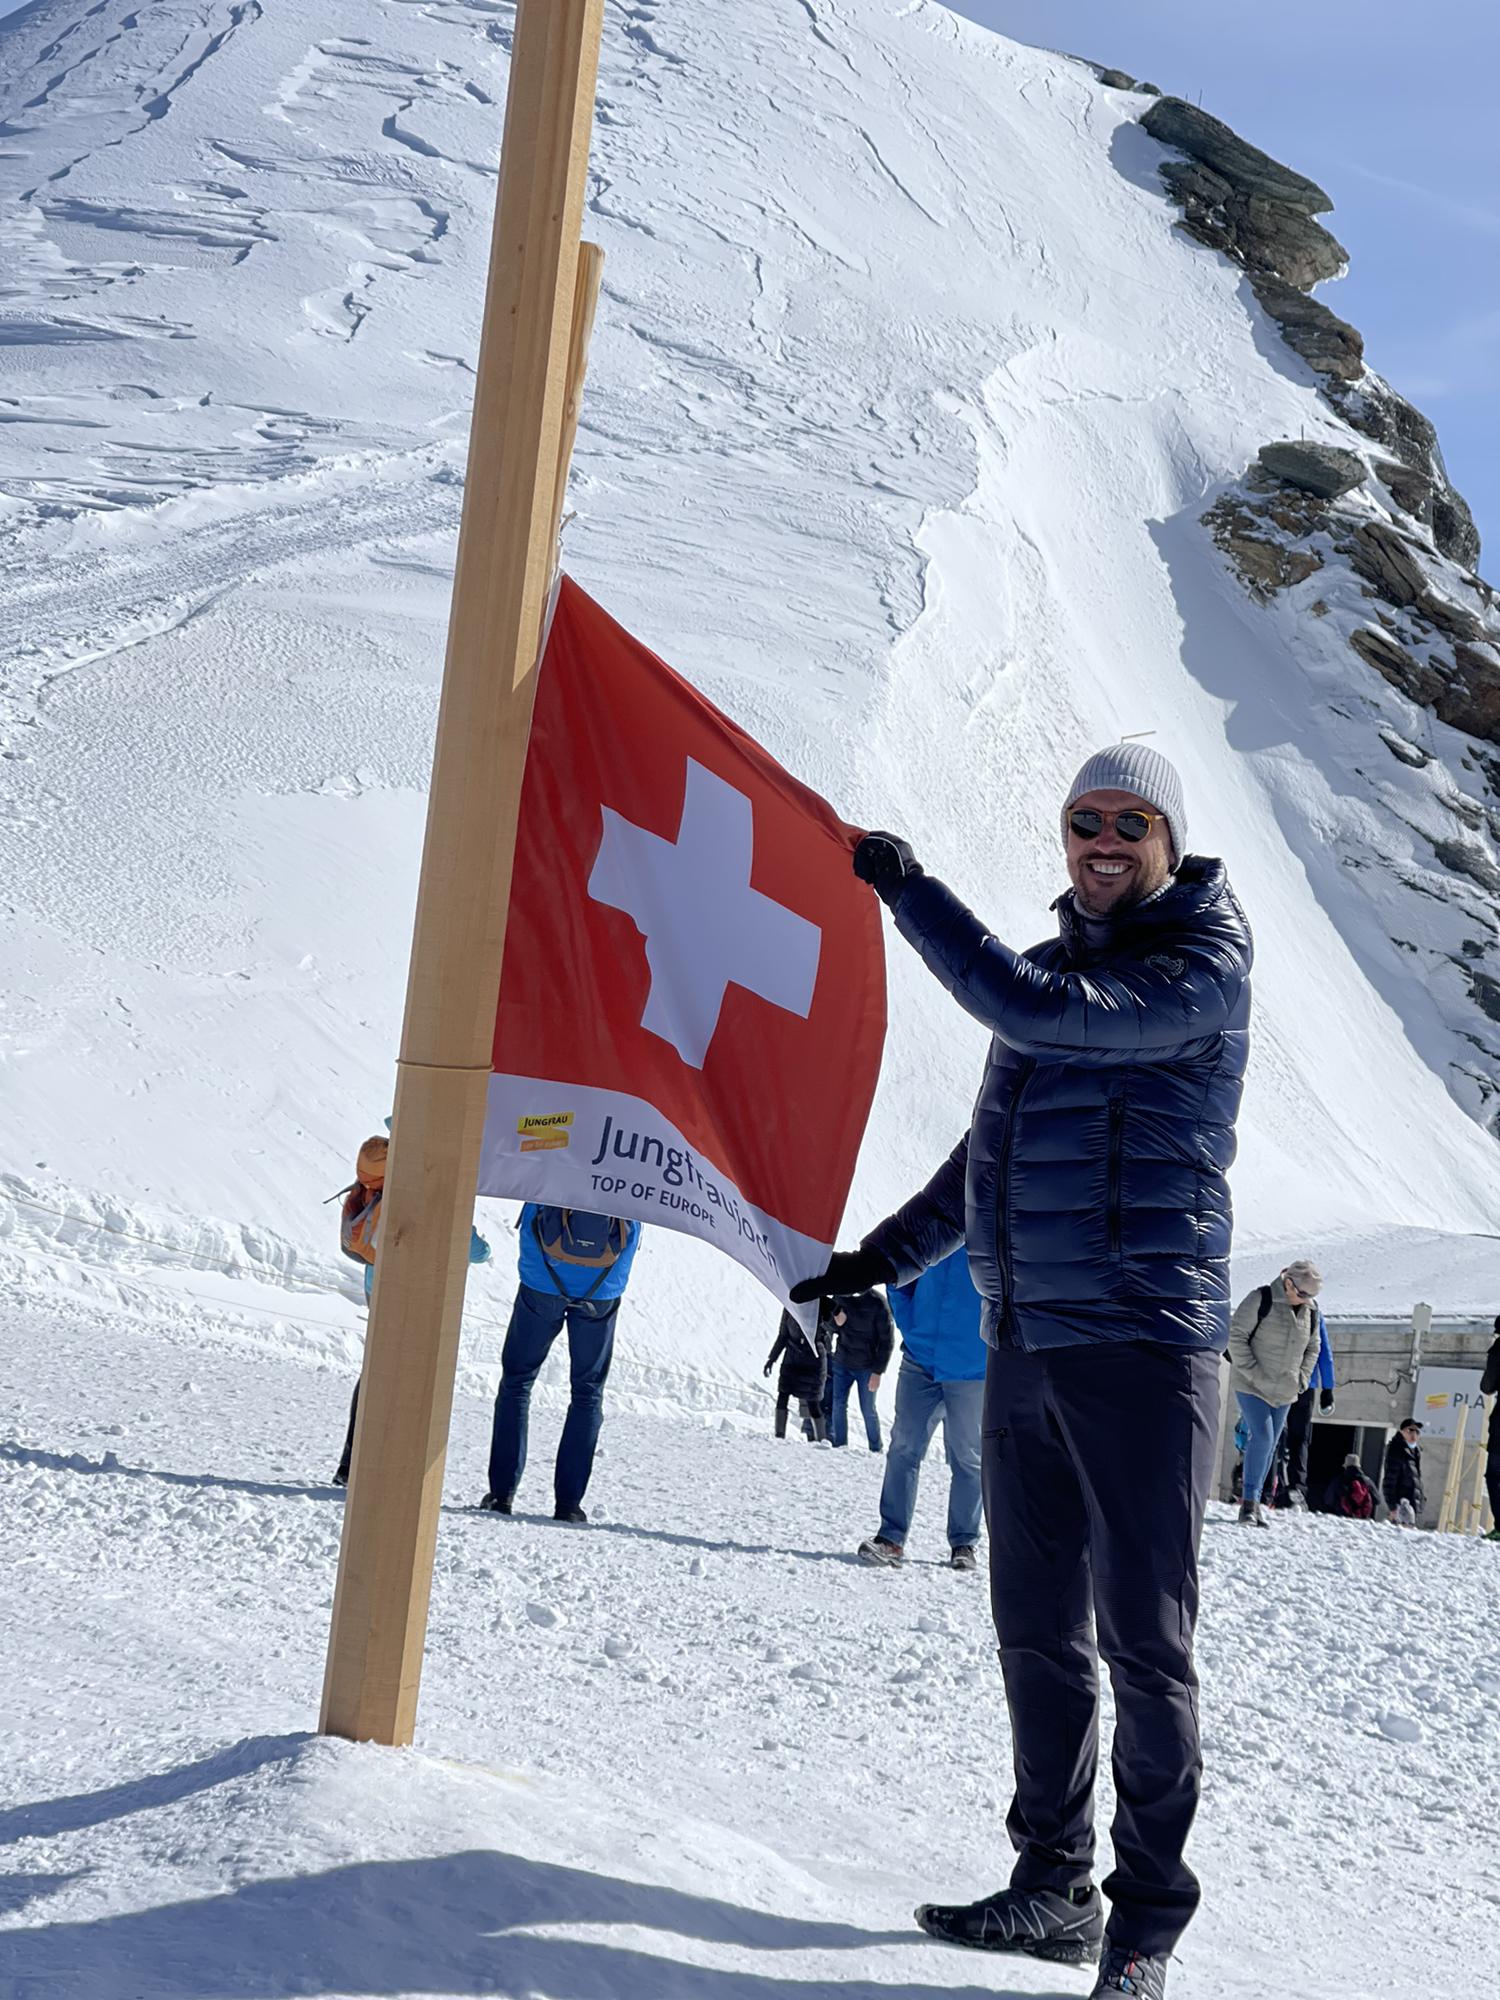 Jungfraujoch- Top of Europe